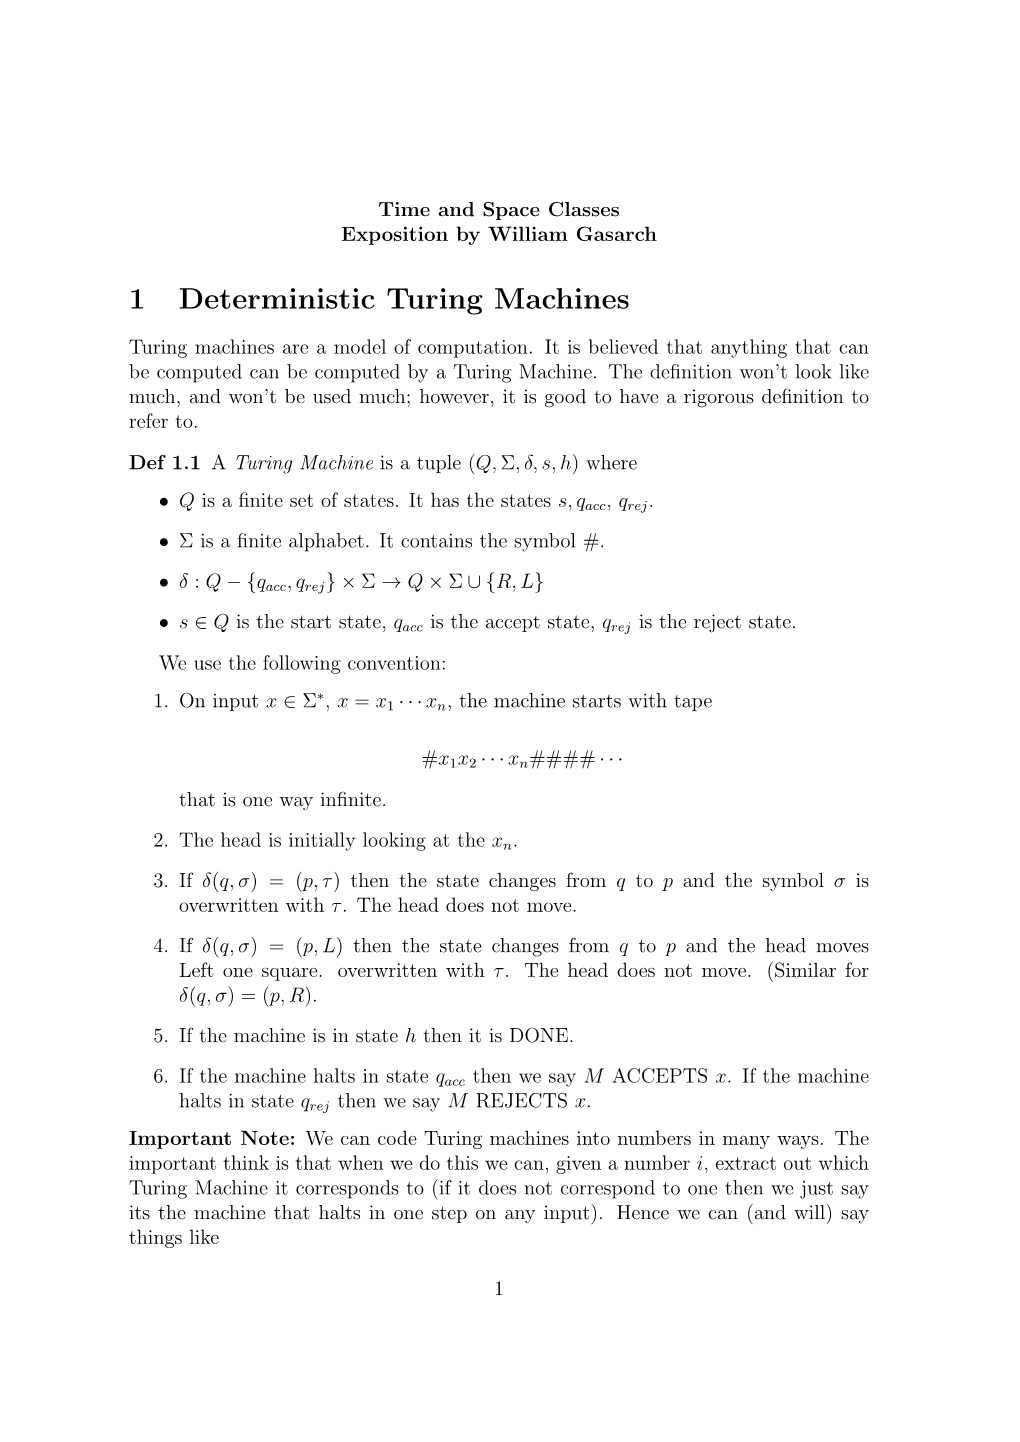 1 Deterministic Turing Machines